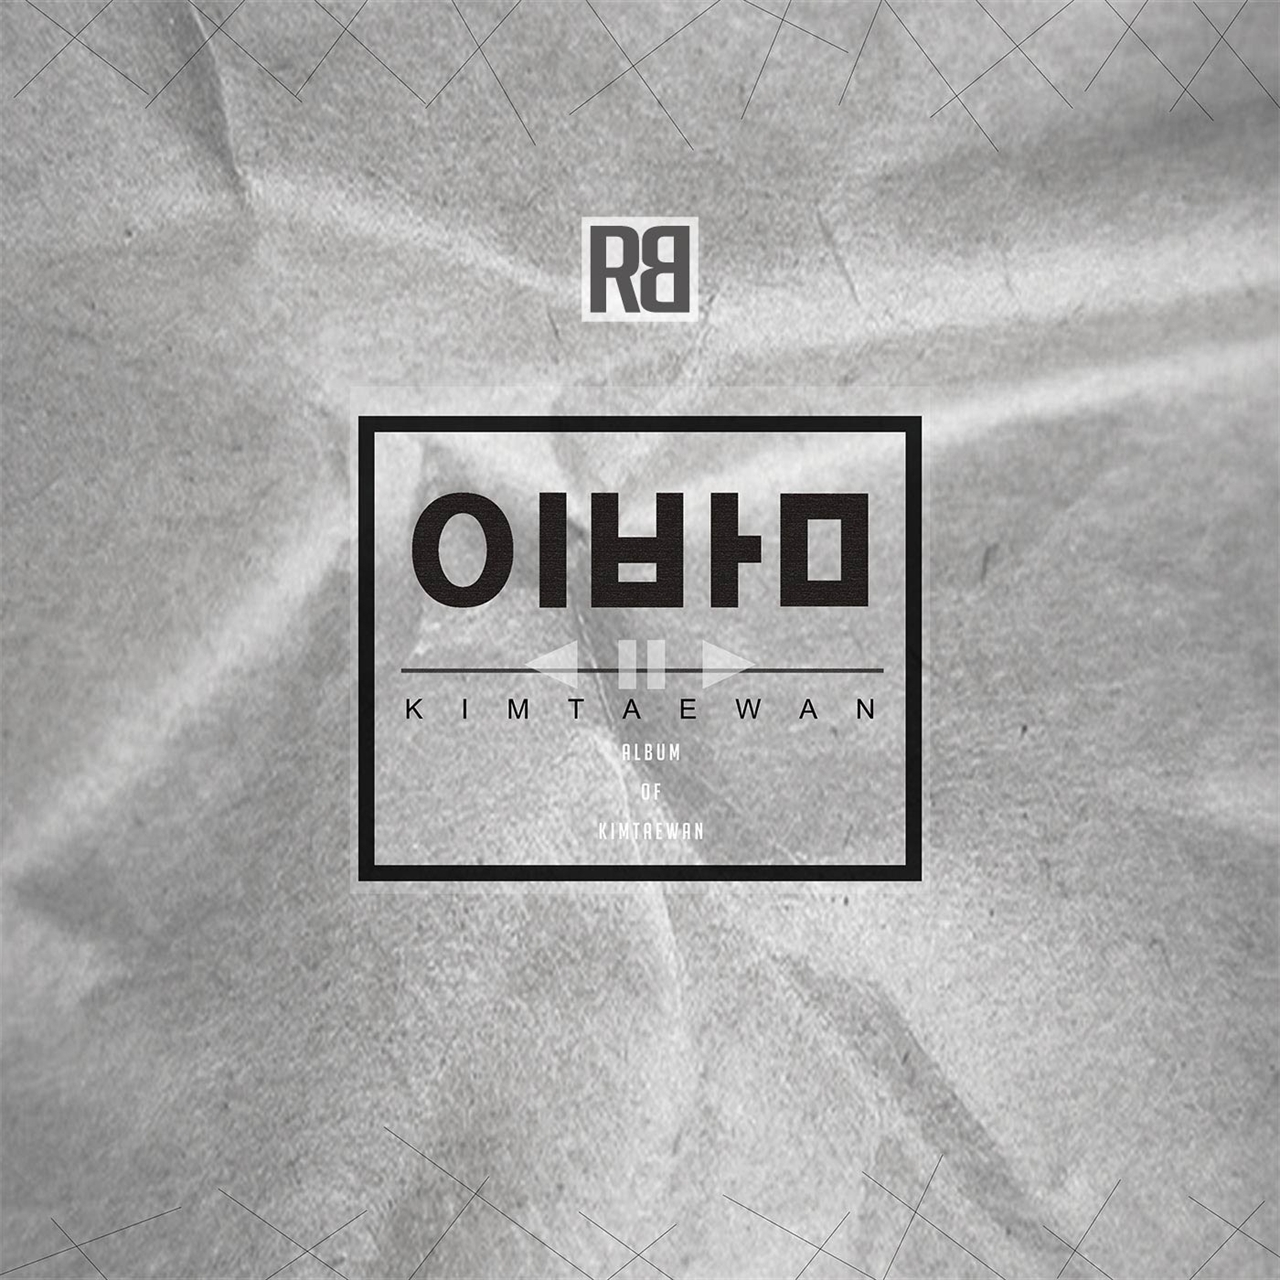 래퍼 로빅 싱글 <이 밤> 재킷사진 래퍼 로빅은 <멀미날거같애> 이후로 꾸준하게 음반활동을 하면서 최근에는 <이 밤> 이라는 싱글을 발매하였다.